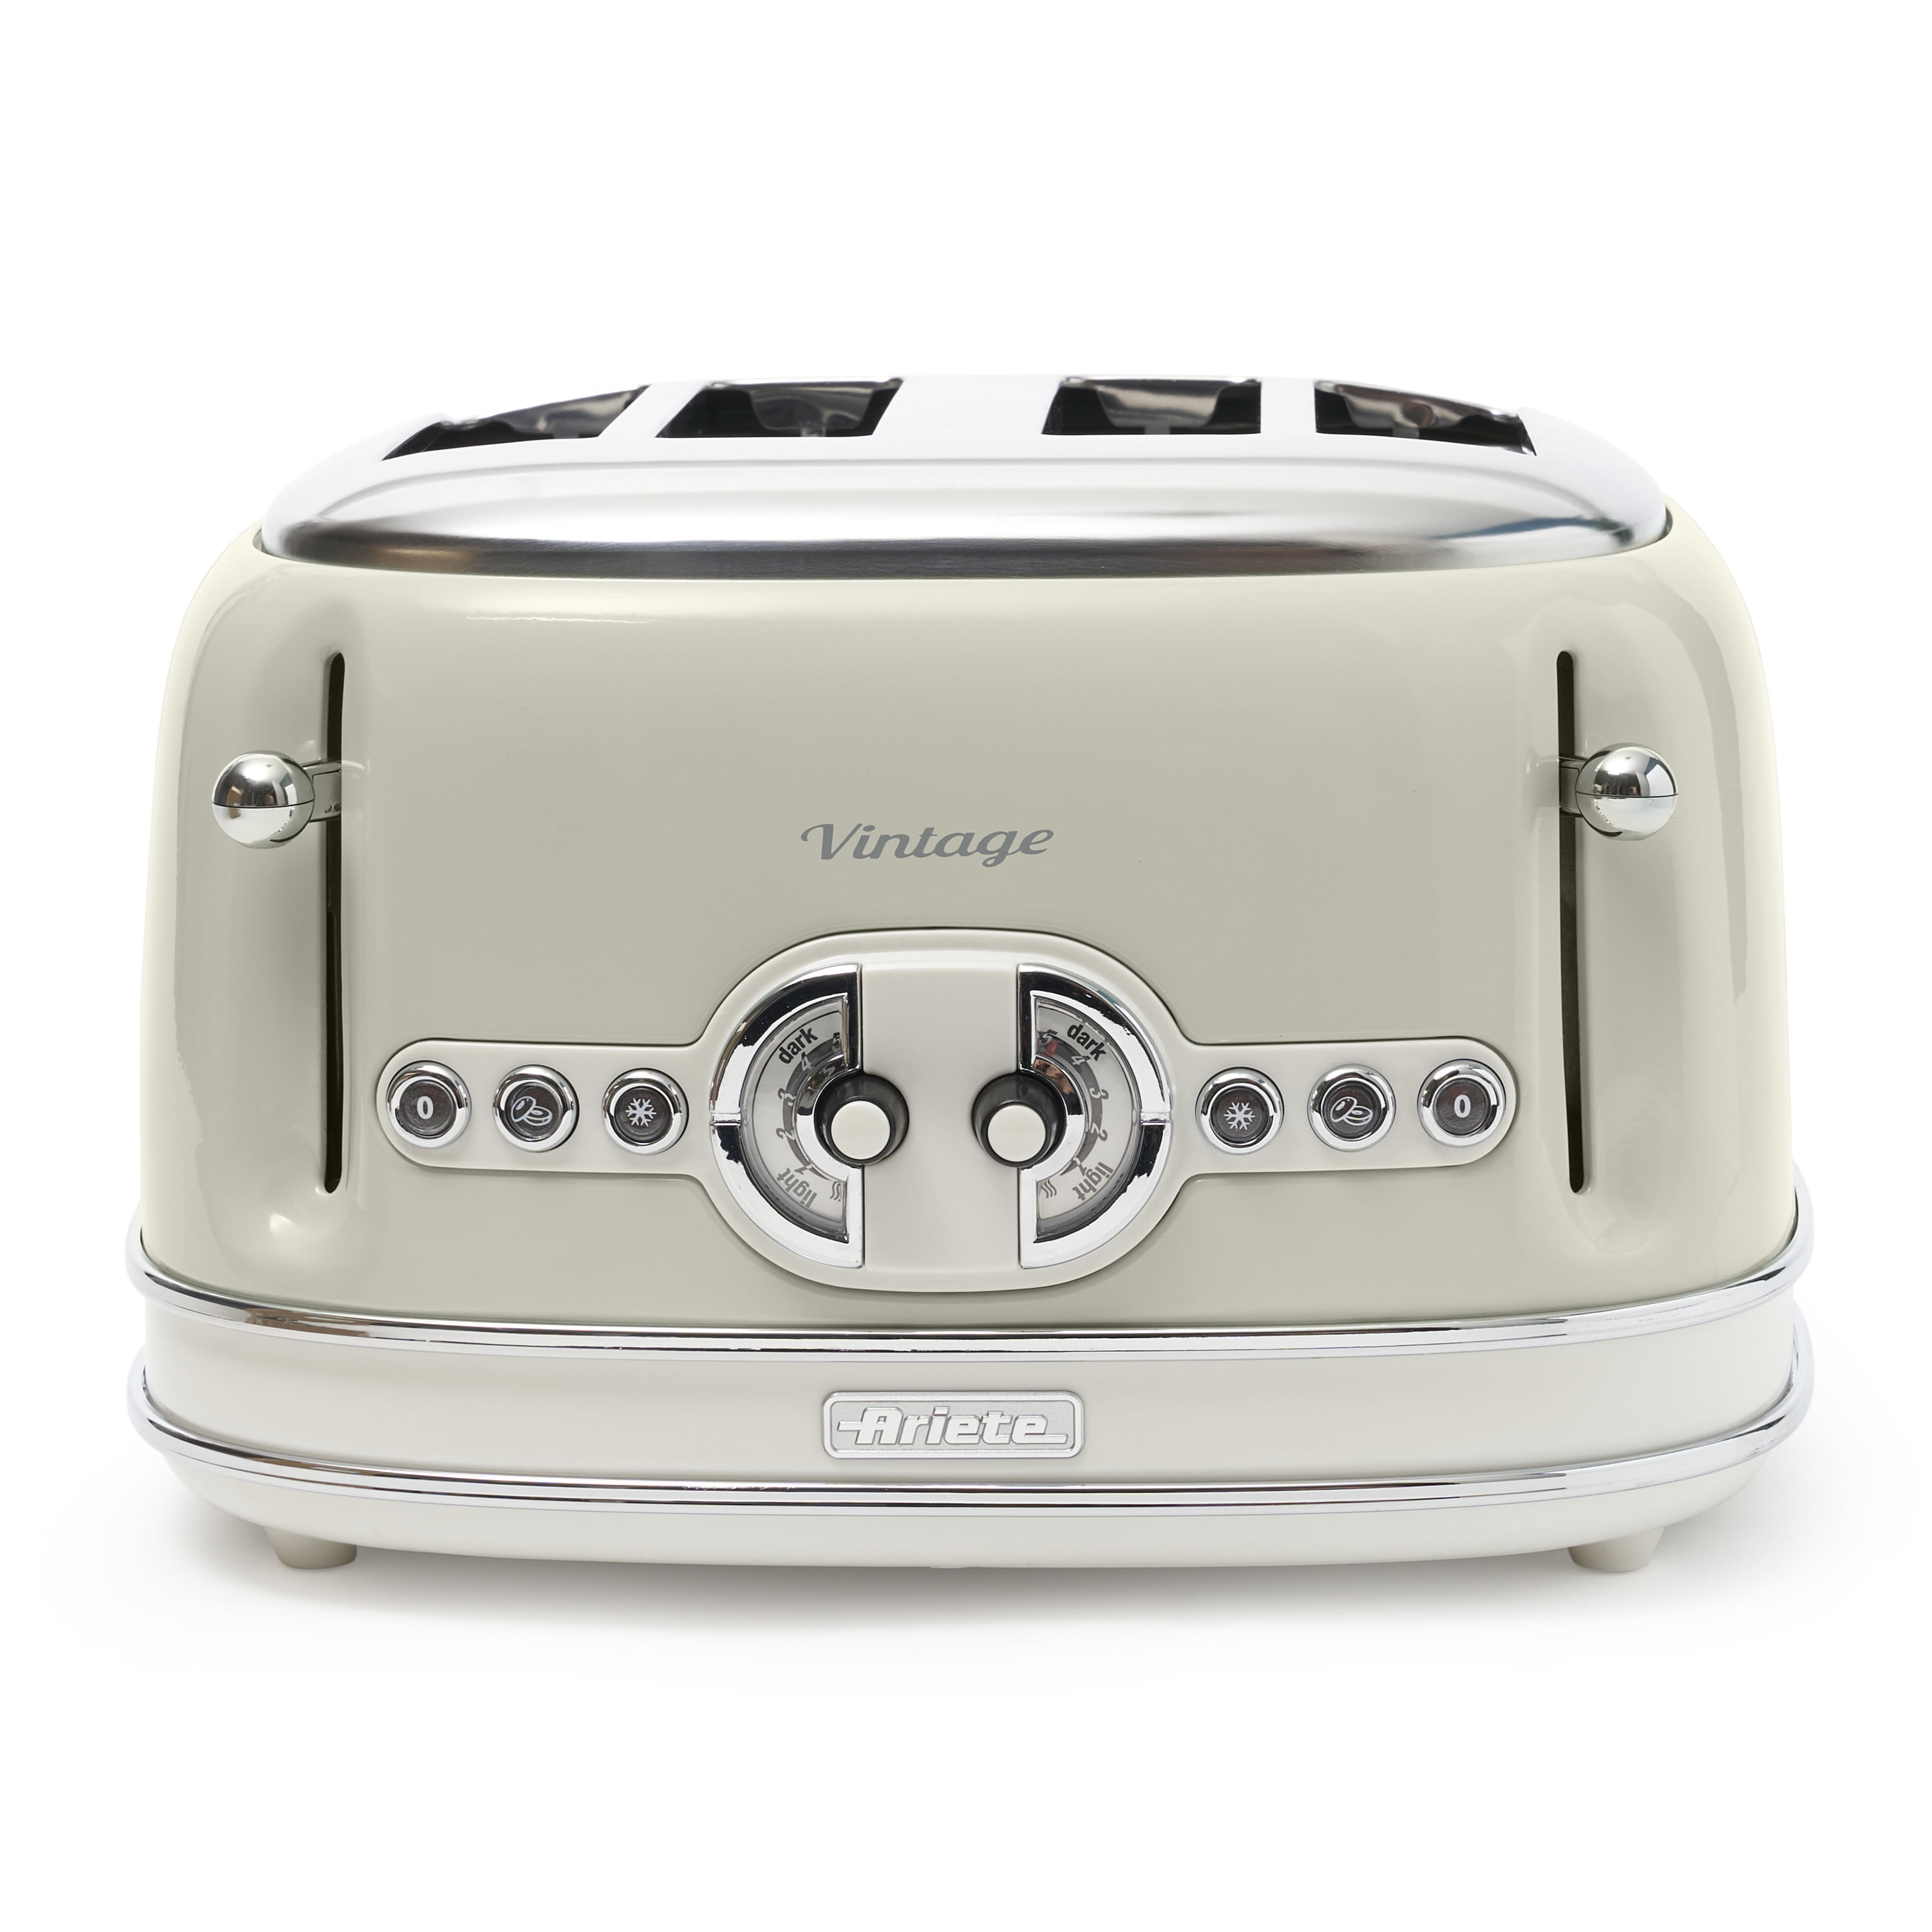 Buydeem Toaster 4 Slice Extra Wide Slots Stainless Steel Retro Vintage Look